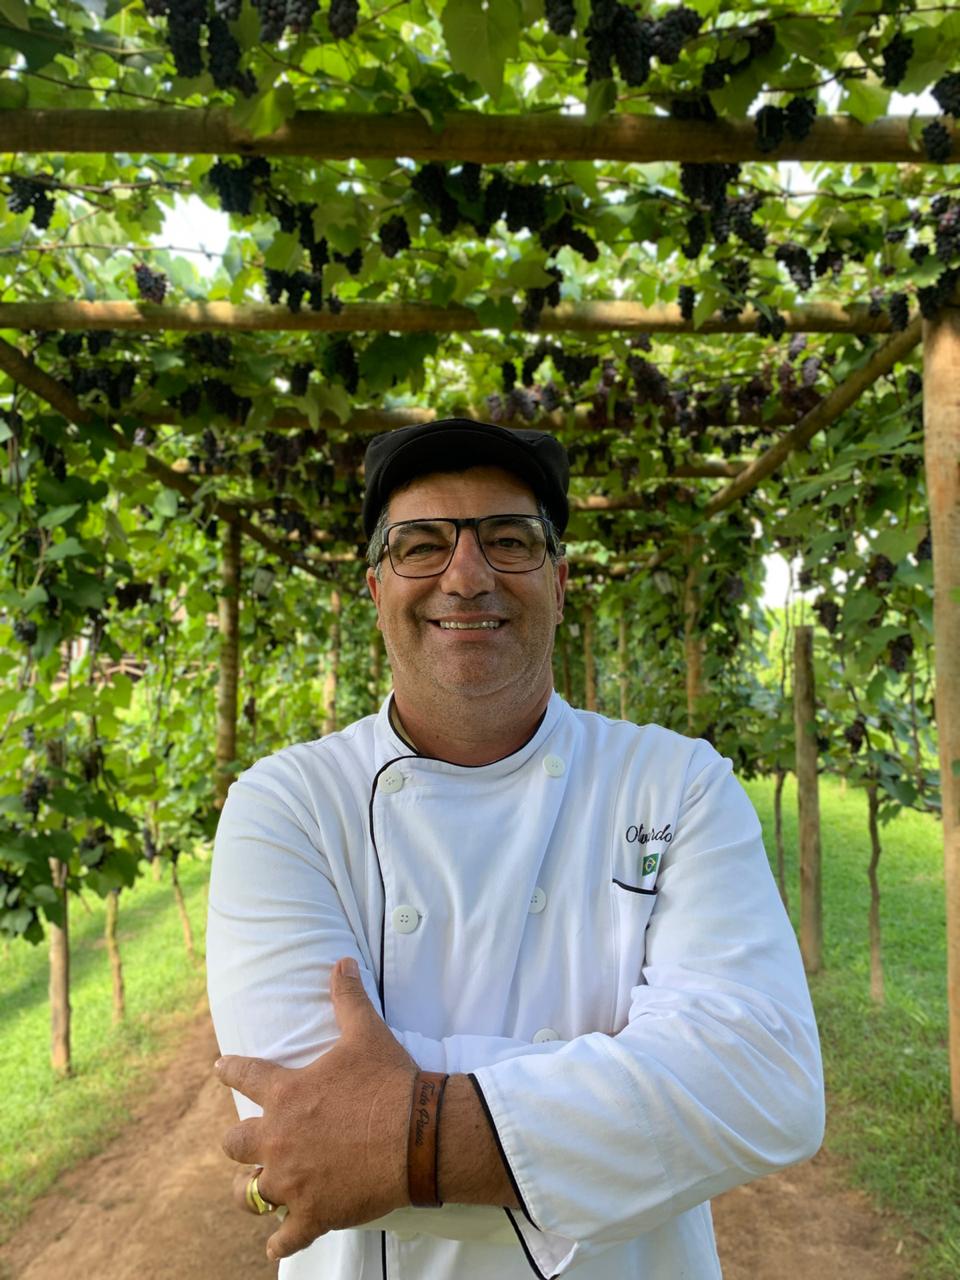 Colheita da uva acontece em restaurante do popular chef Olivardo Saqui